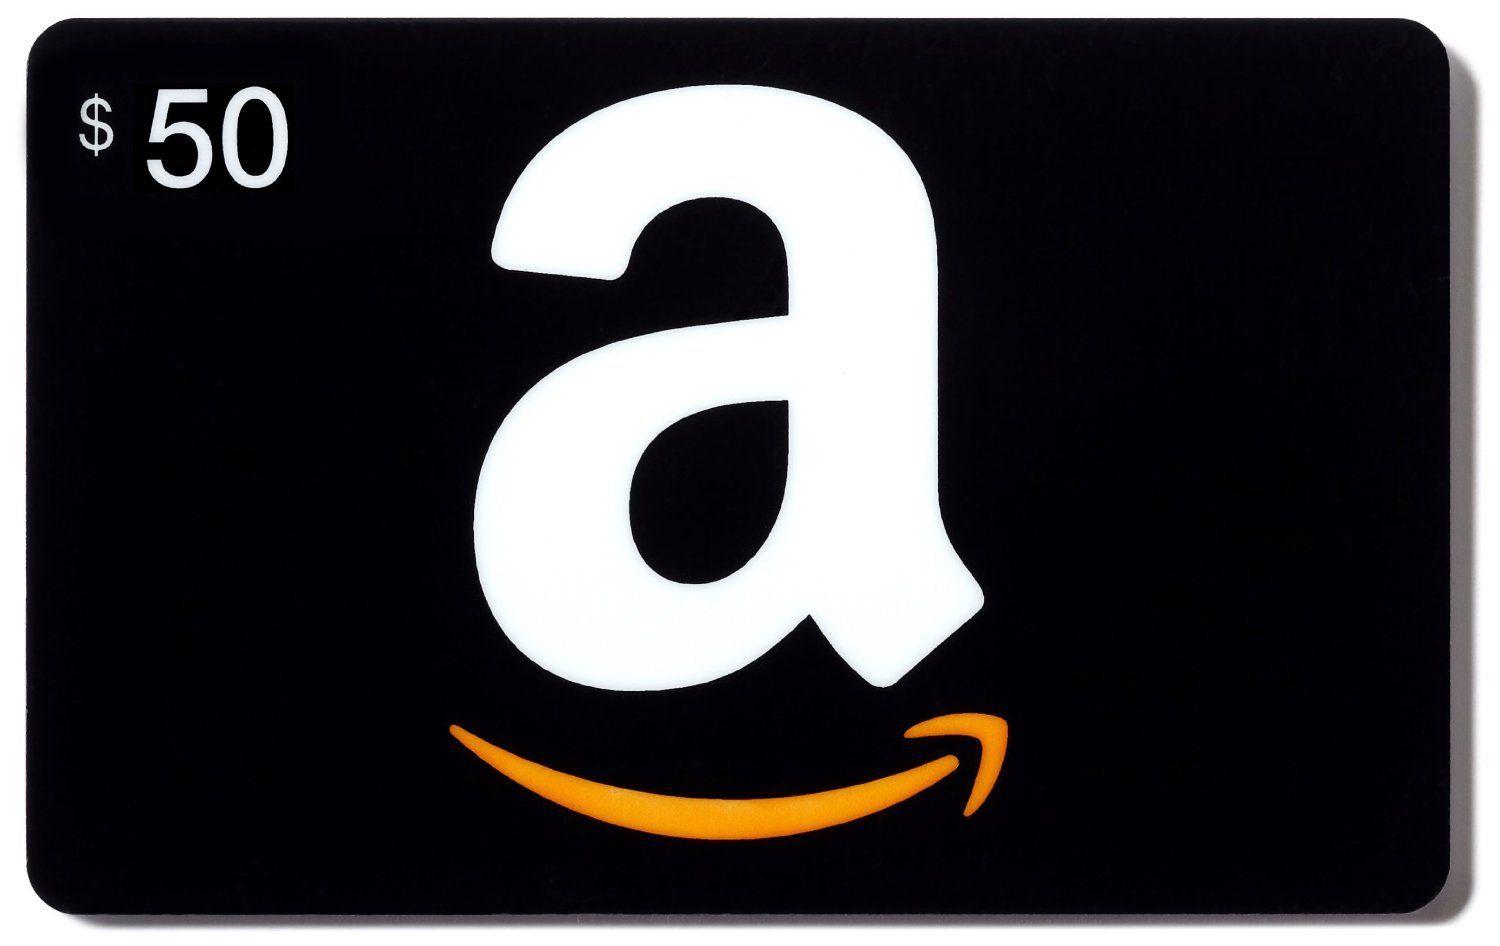 بطاقة هدايا أمازون Amazon US $ 50 للستور الأمريكي